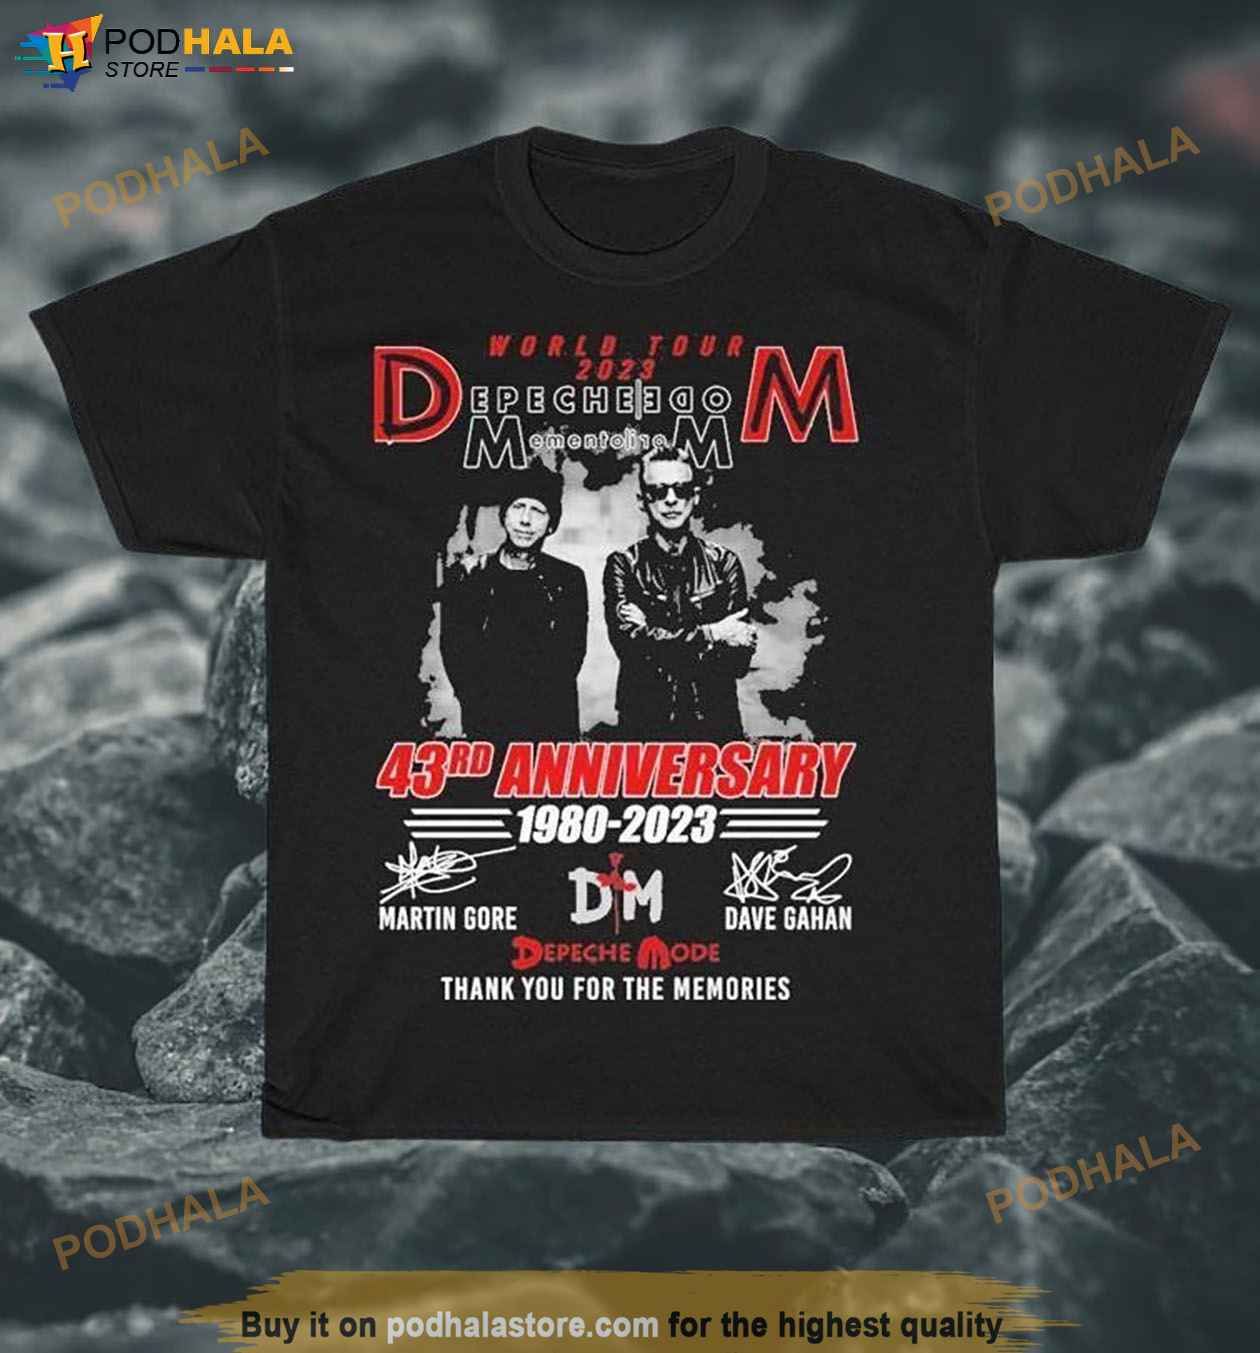 World Tour 2023 Depeche Mode 43rd Anniversary 19802023 Shirt, Depeche